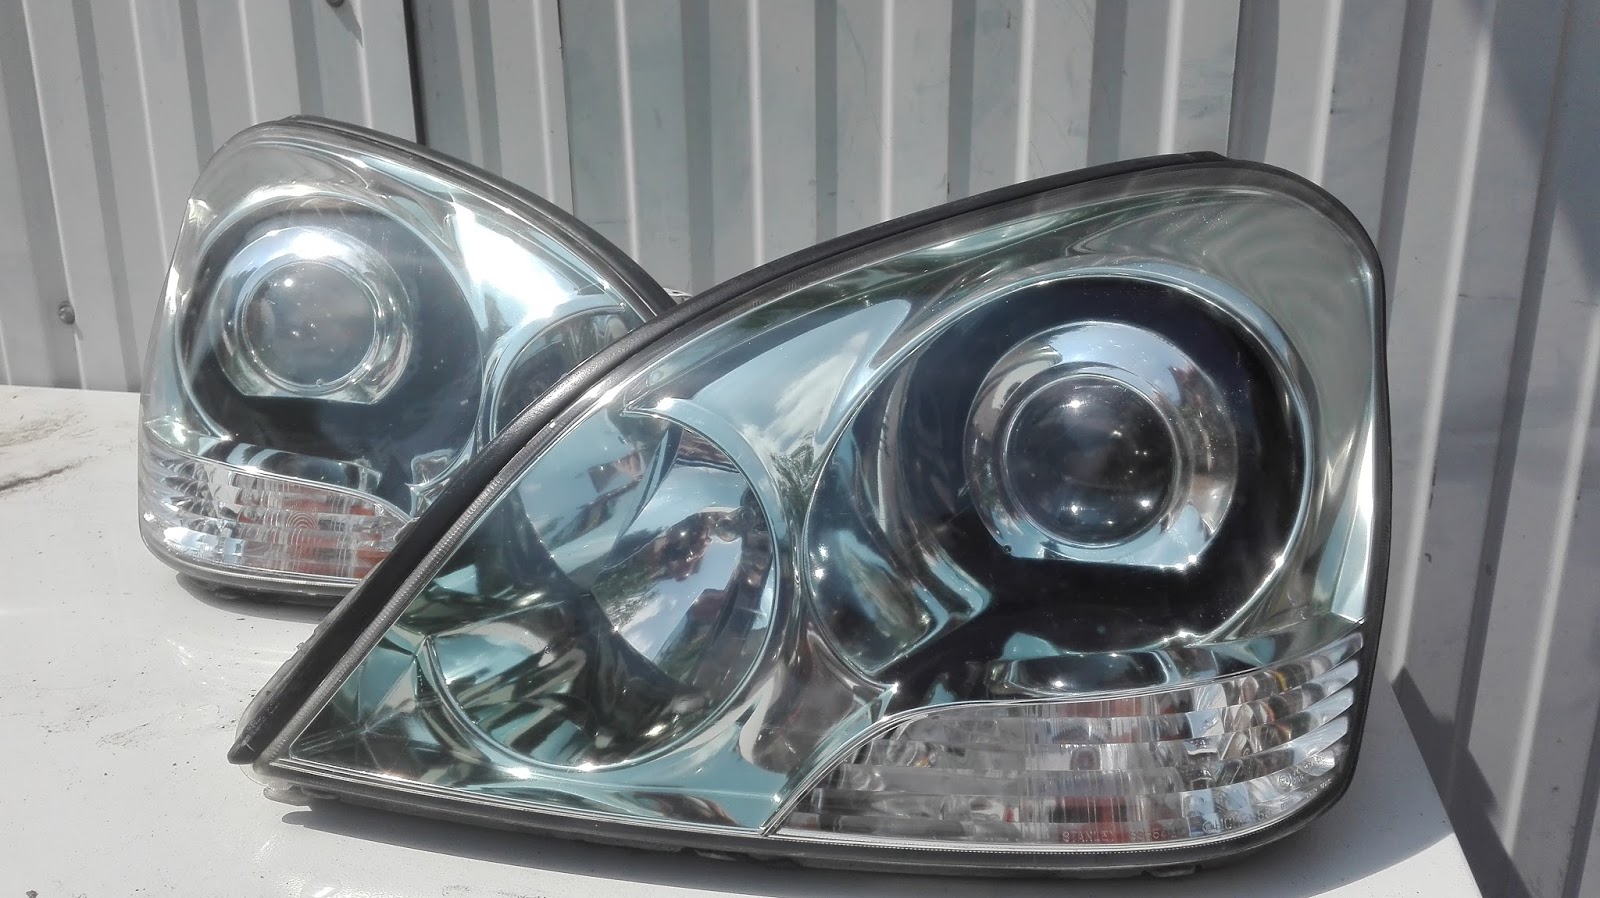 Naprawa świateł samochodowych LEXUS przeróbka lamp z